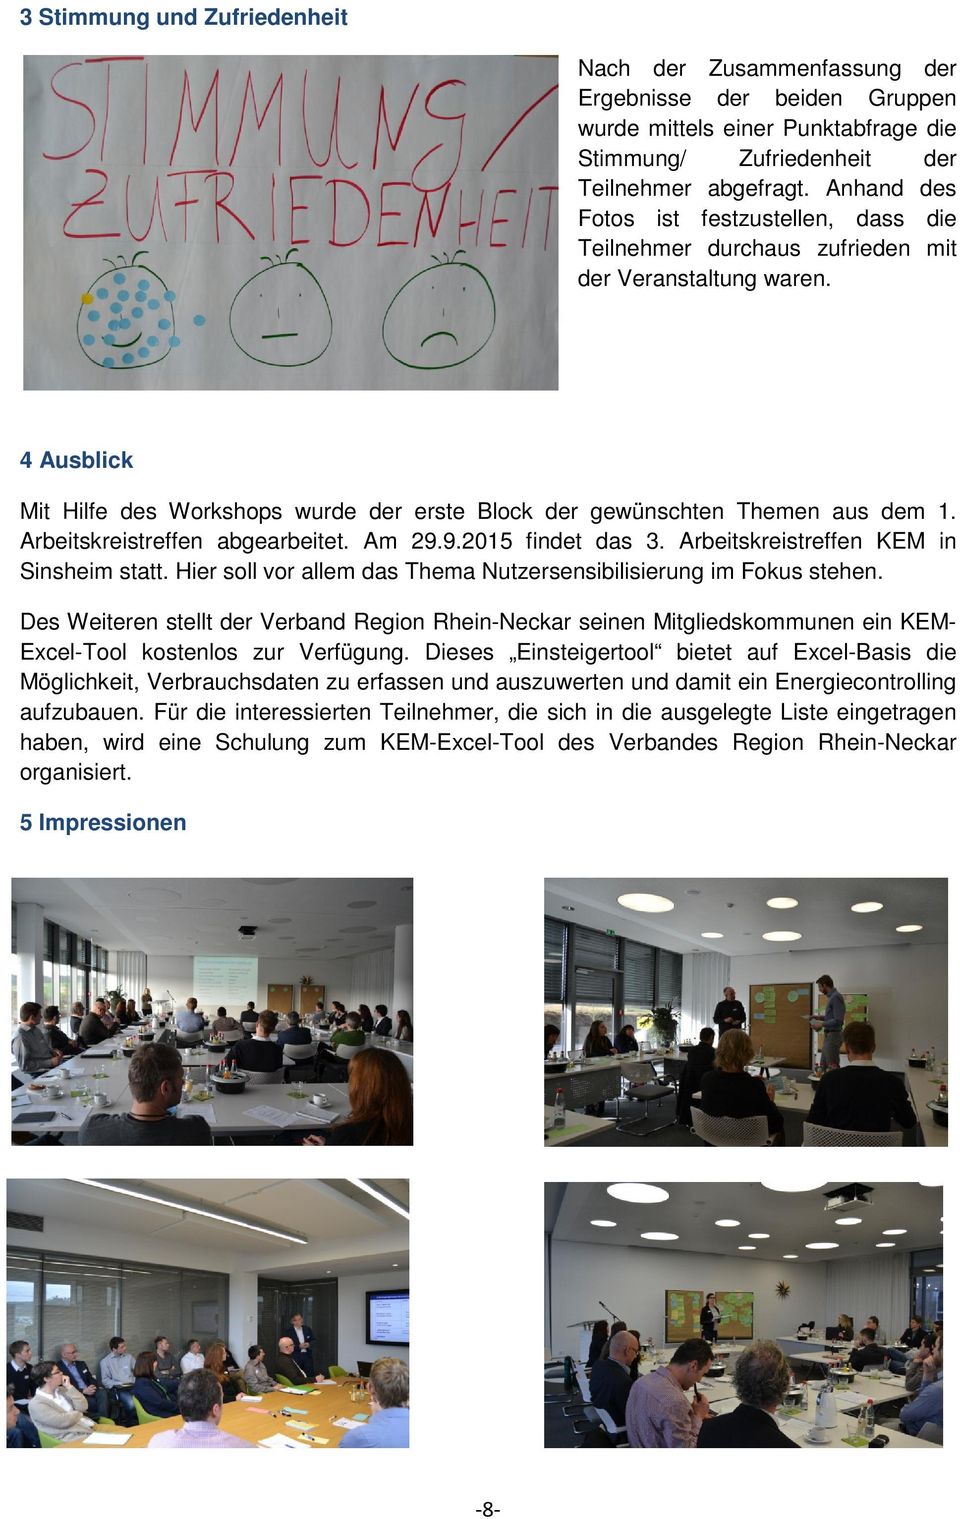 Arbeitskreistreffen abgearbeitet. Am 29.9.2015 findet das 3. Arbeitskreistreffen KEM in Sinsheim statt. Hier soll vor allem das Thema Nutzersensibilisierung im Fokus stehen.